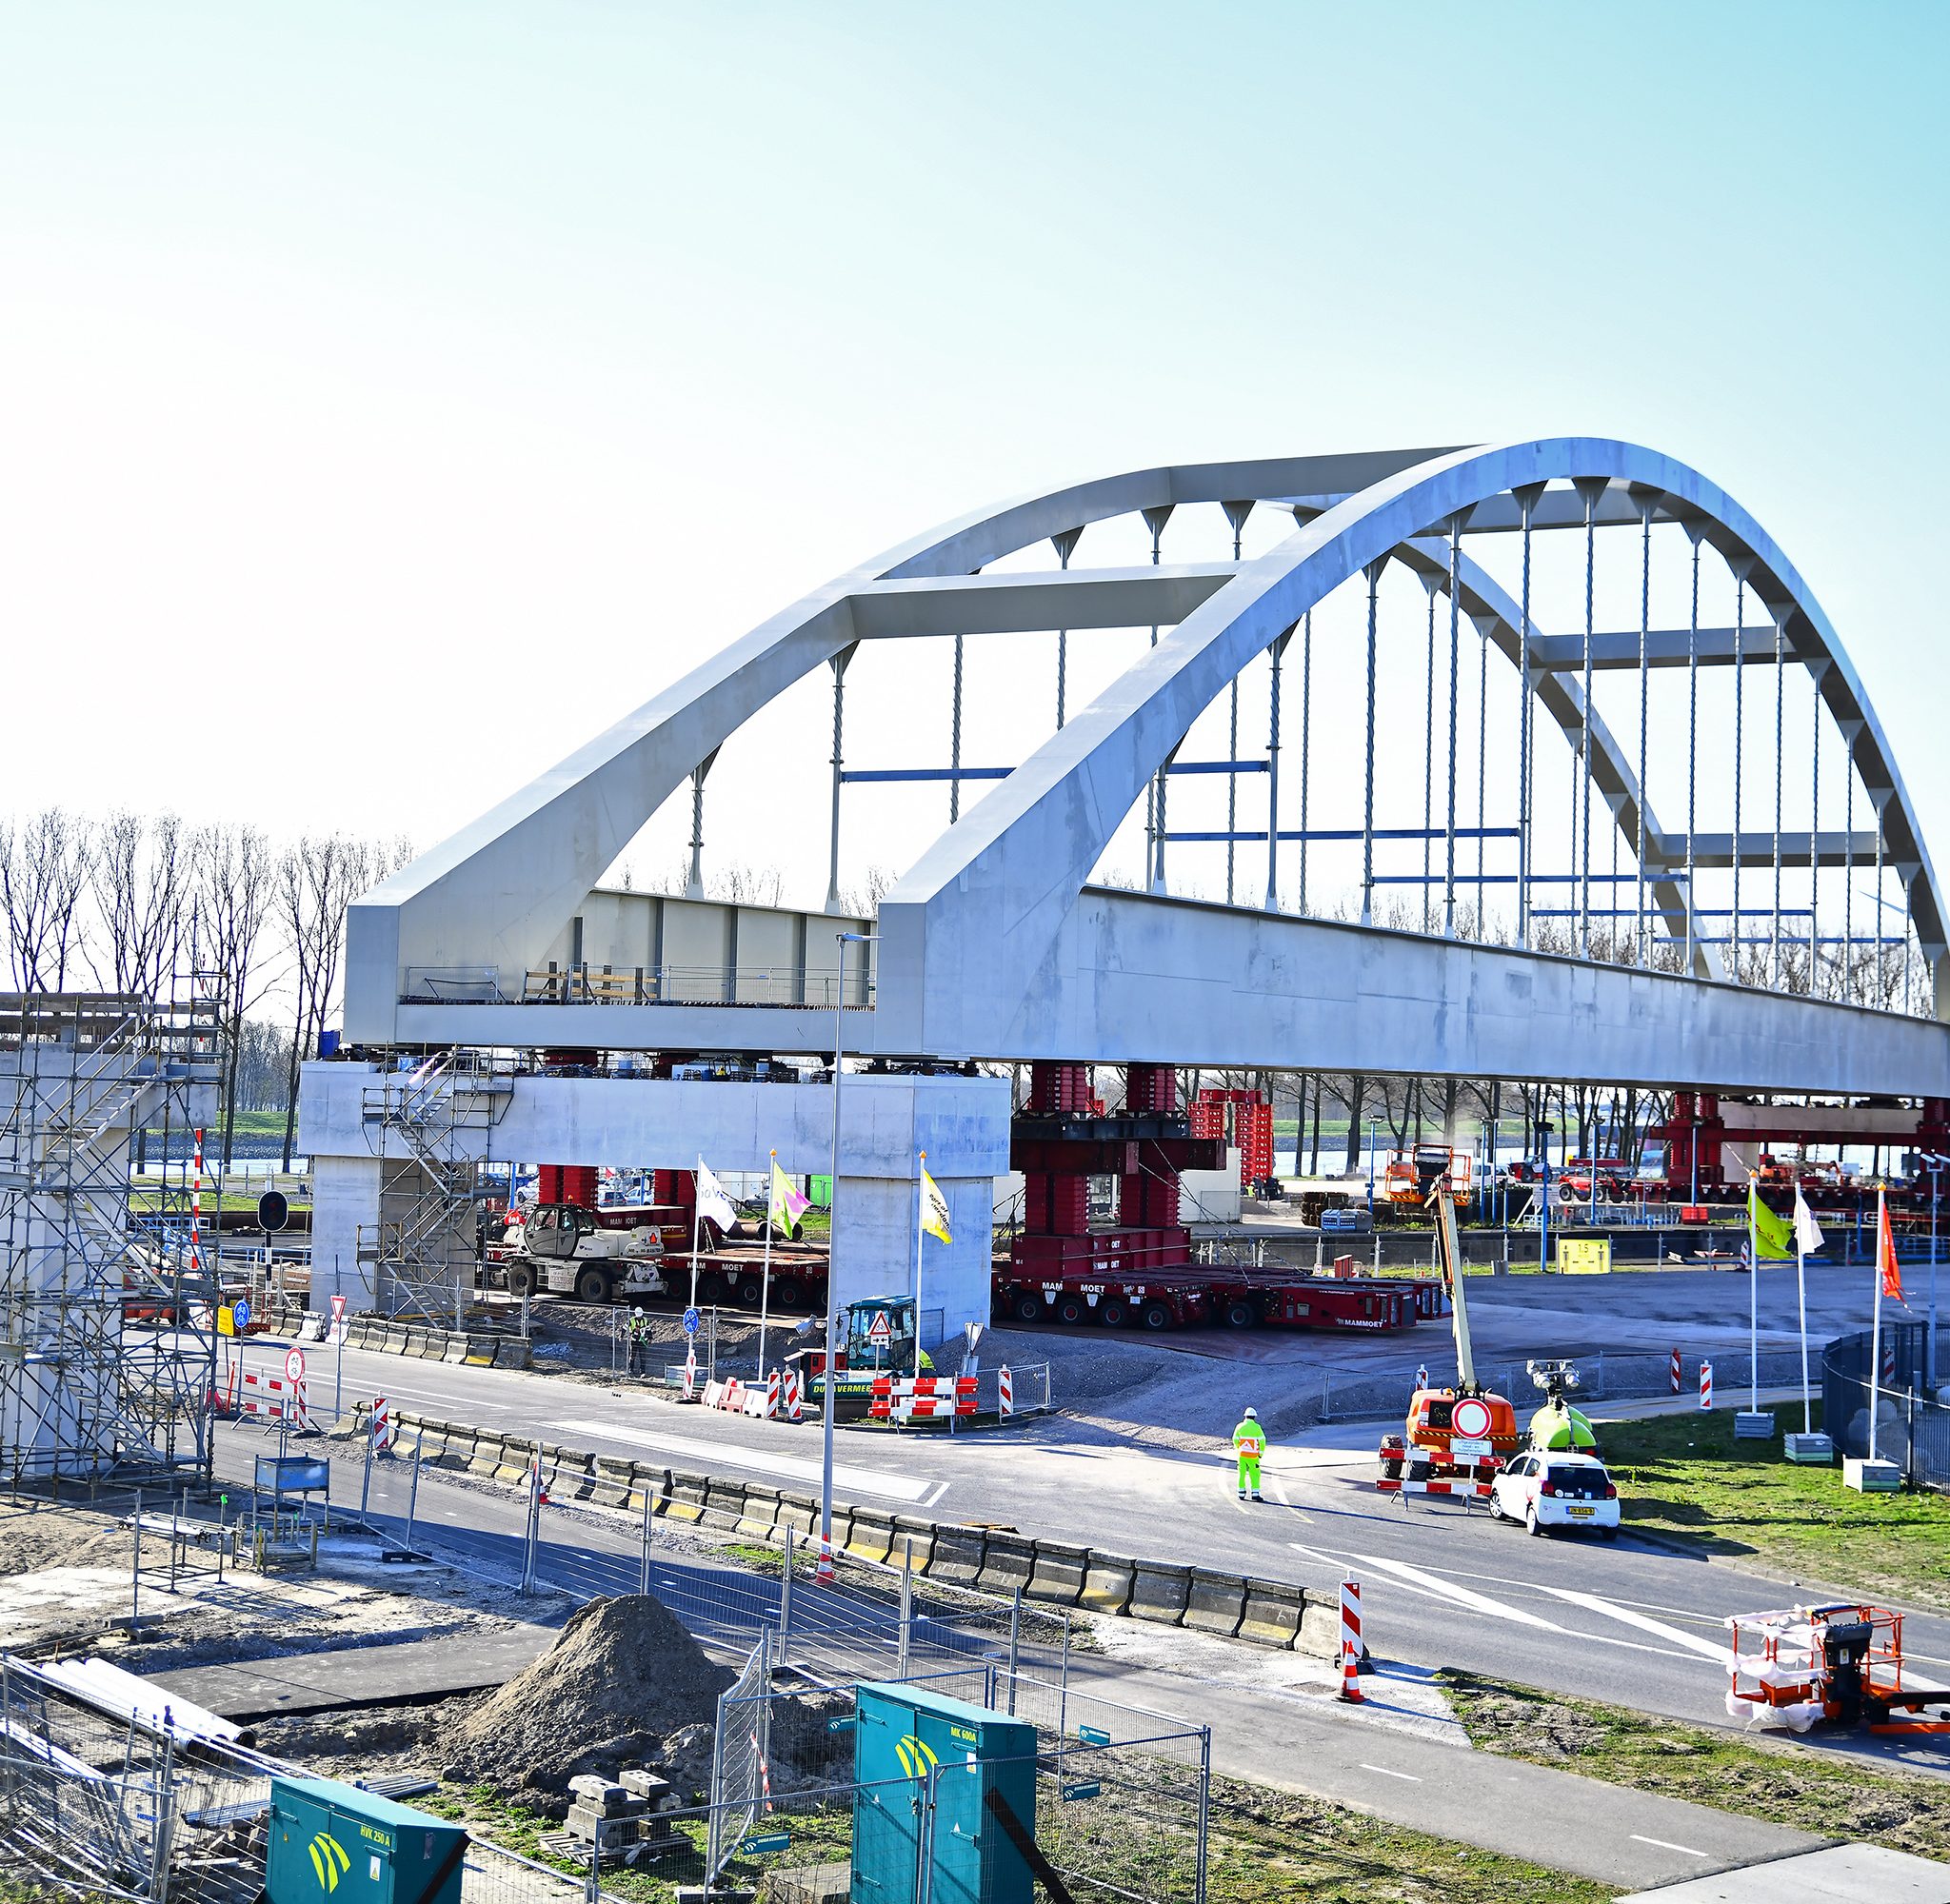 Zorgvuldig manoeuvreren met de nieuwe spoorbrug over de Rozenburgsesluis. (Foto Danny Cornelissen / Port of Rotterdam)